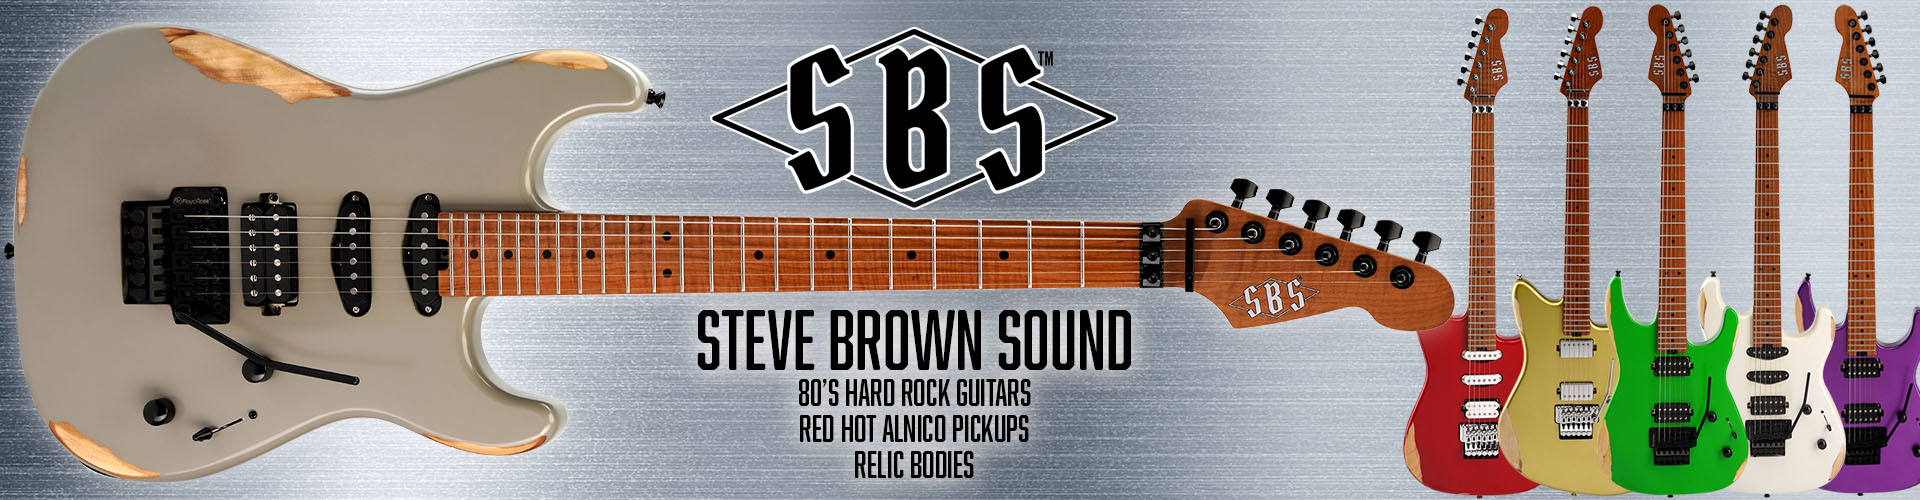 SBS Guitars